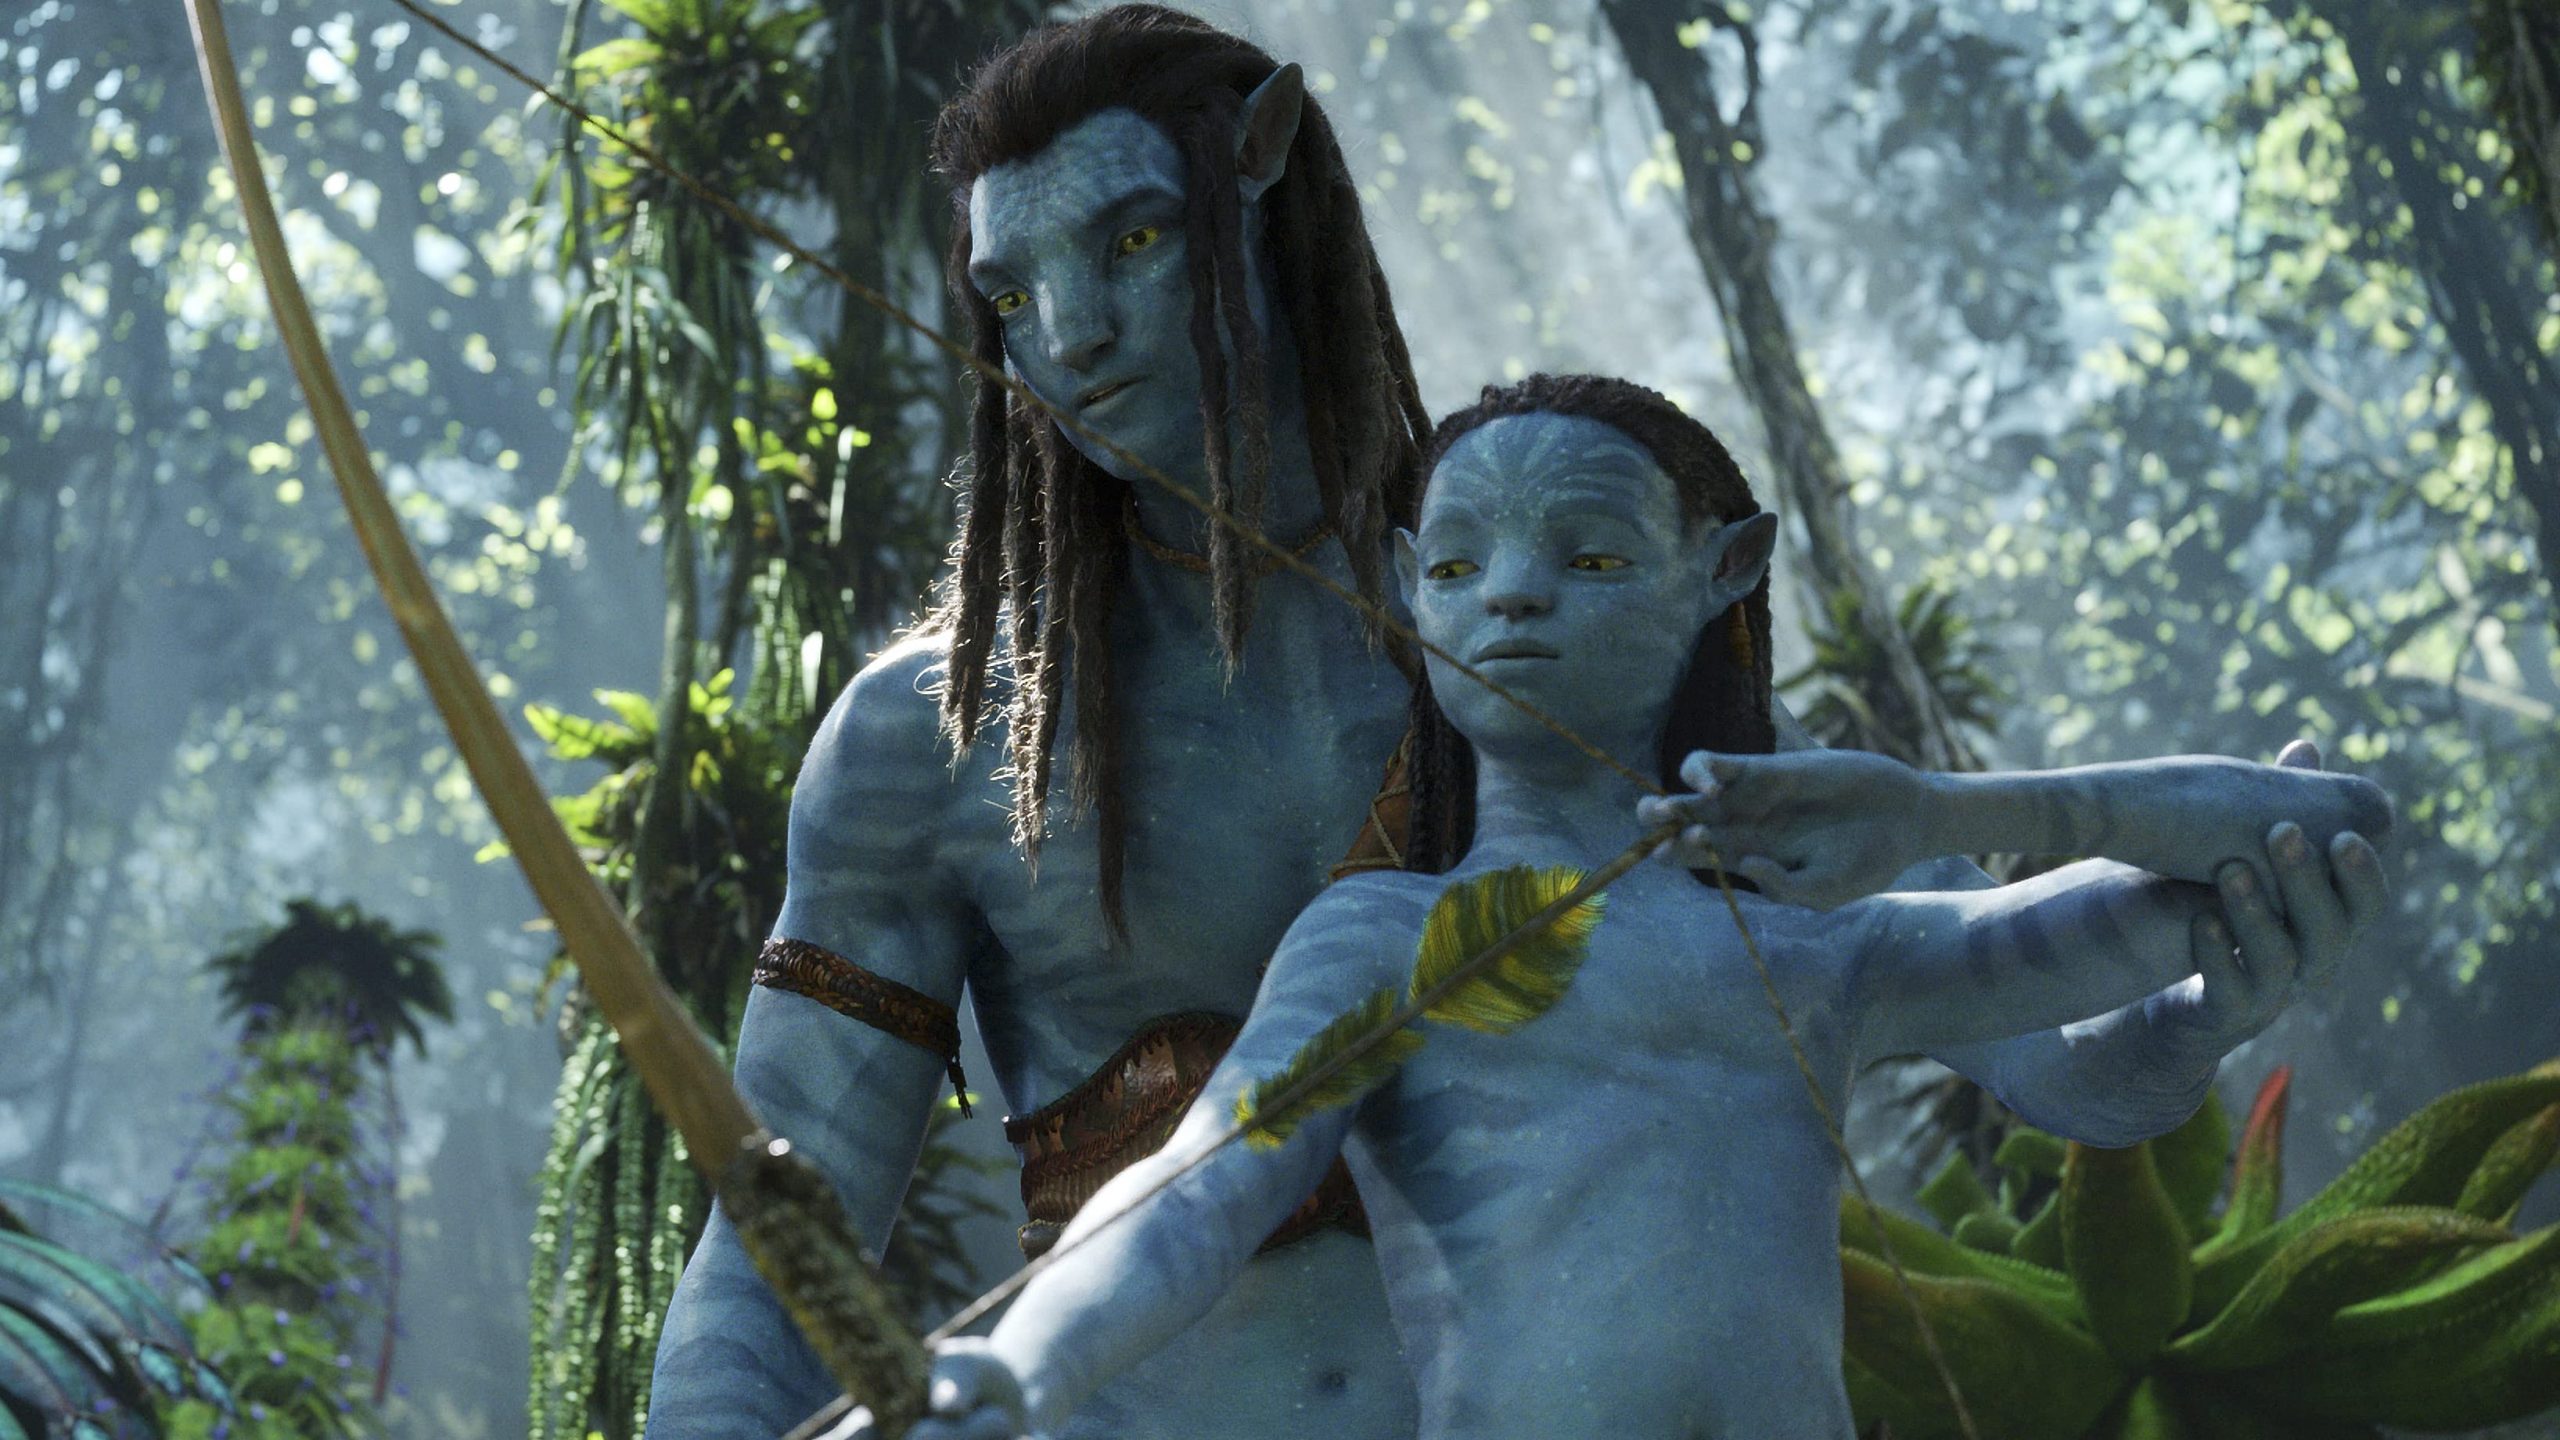 Avatar 2 ngân sách (budget): Bộ phim Avatar 2 trong tương lai sẽ được đầu tư ngân sách lớn nhất từ trước đến nay. Với số tiền tài trợ vượt qua hơn một tỷ đô la Mỹ, bộ phim sẽ mang đến cho khán giả những cảnh quay tuyệt đẹp và cuộc phiêu lưu điên rồ hấp dẫn. Hãy xem ảnh liên quan đến Avatar 2 ngân sách để hiểu thêm về quá trình sản xuất của bộ phim.